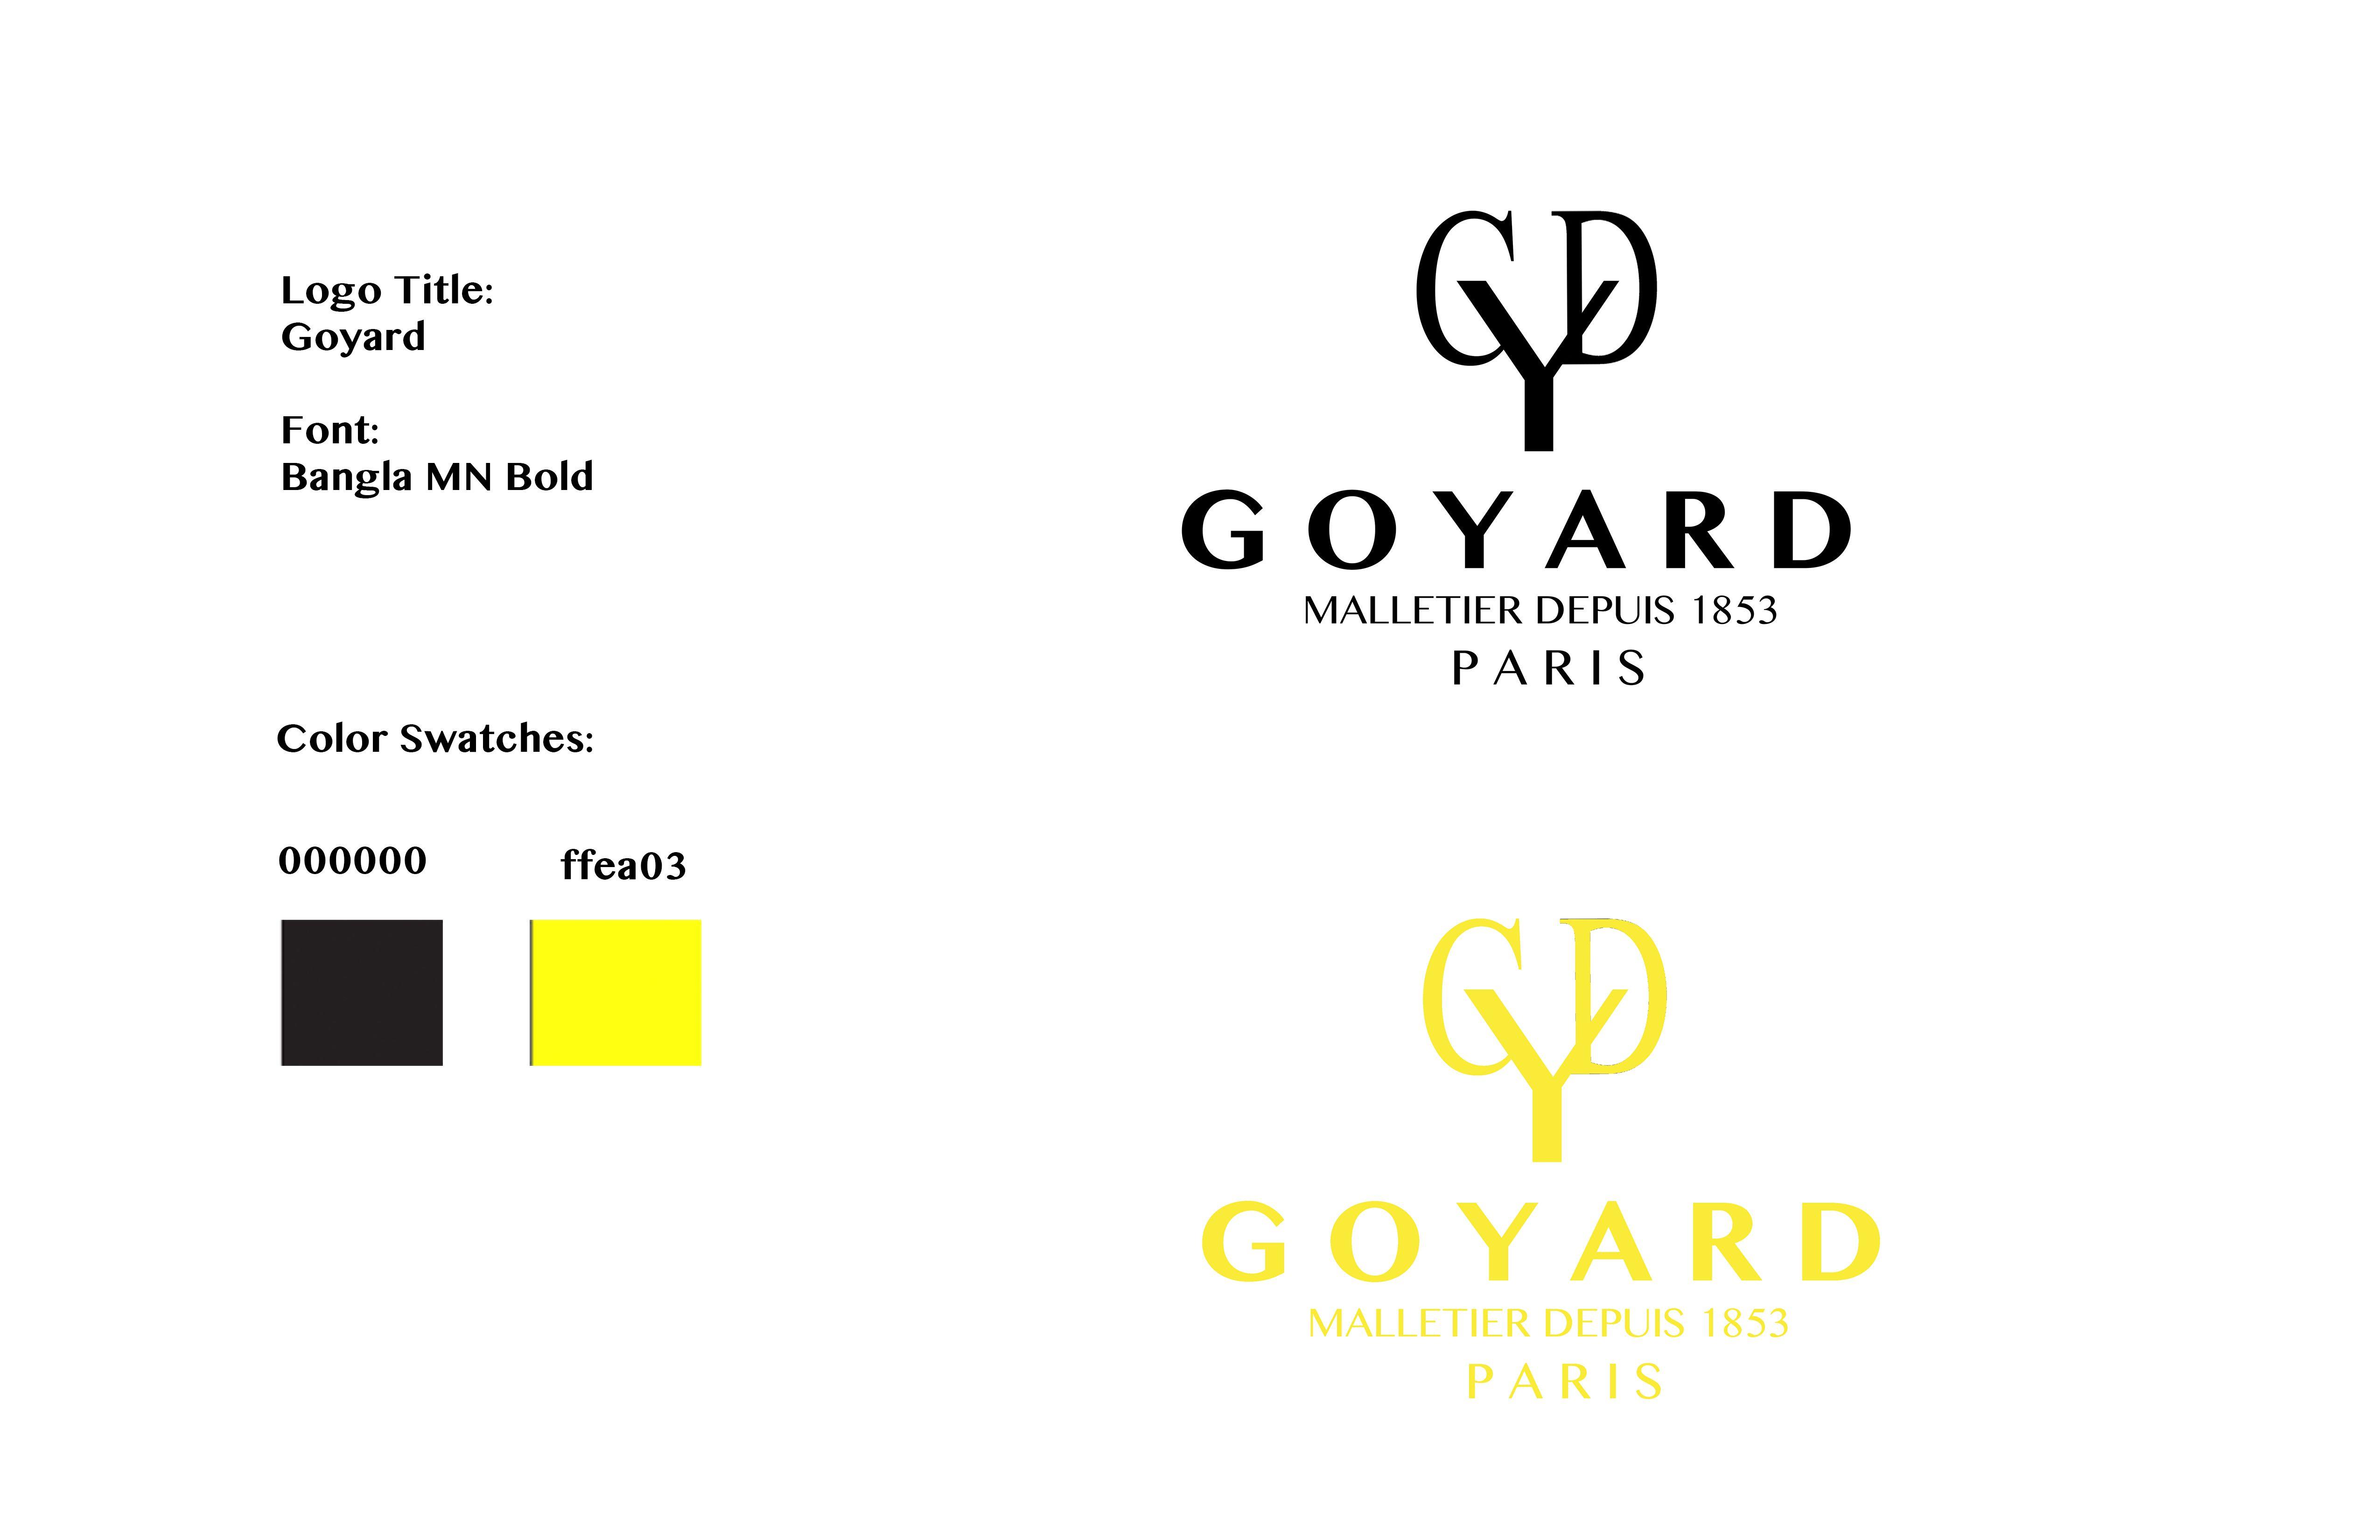 Goyard Official Logo - Goyard Logos